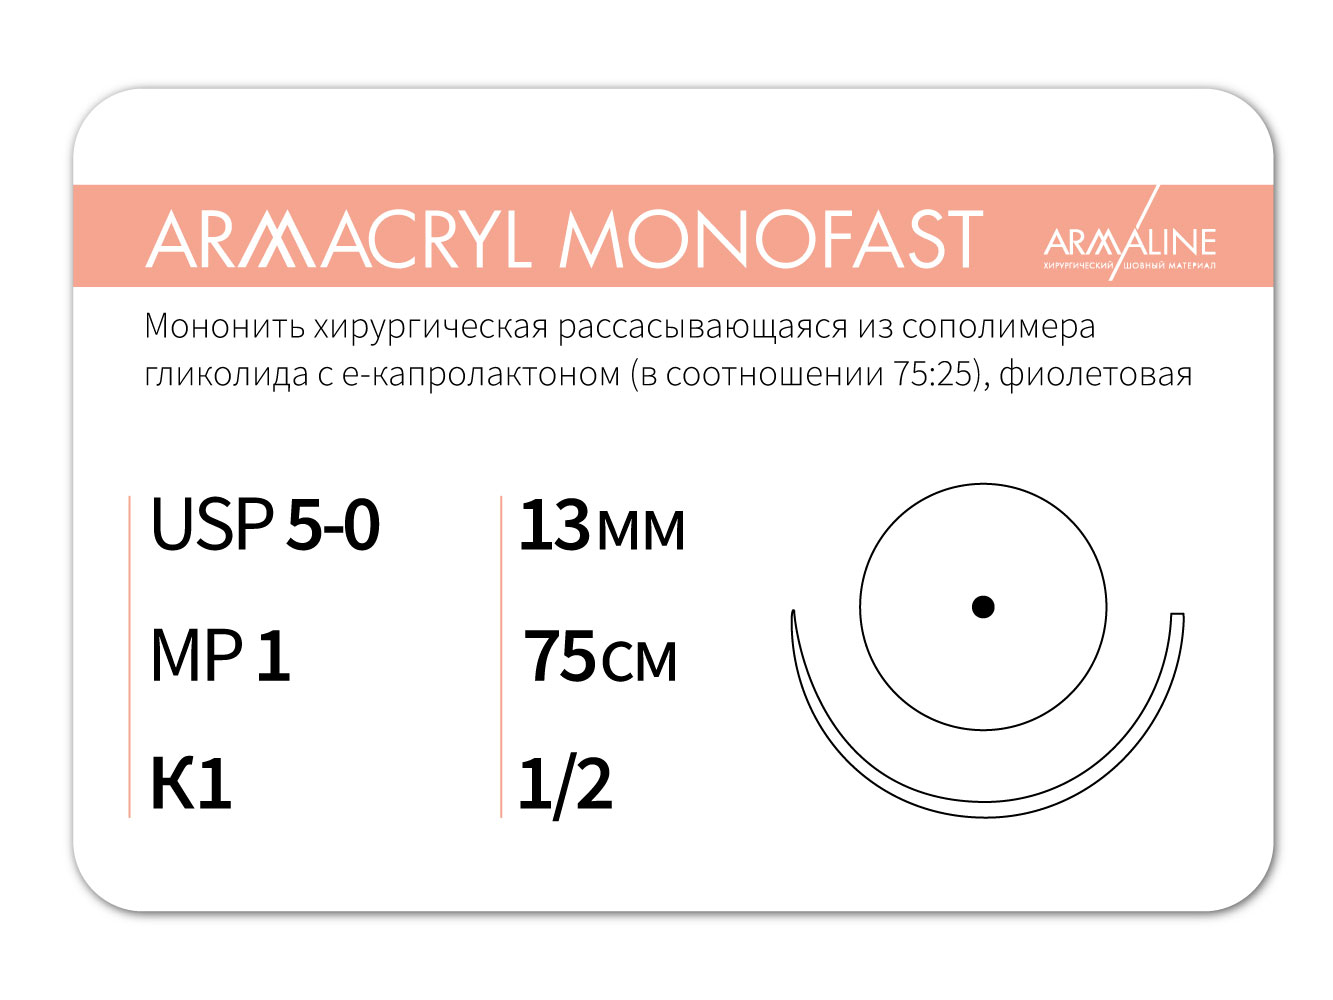 ARMACRYL MONOFAST/Армакрил монофаст (5-0) 75 см - материал хирургический шовный стерильный с атравматической колющей иглой